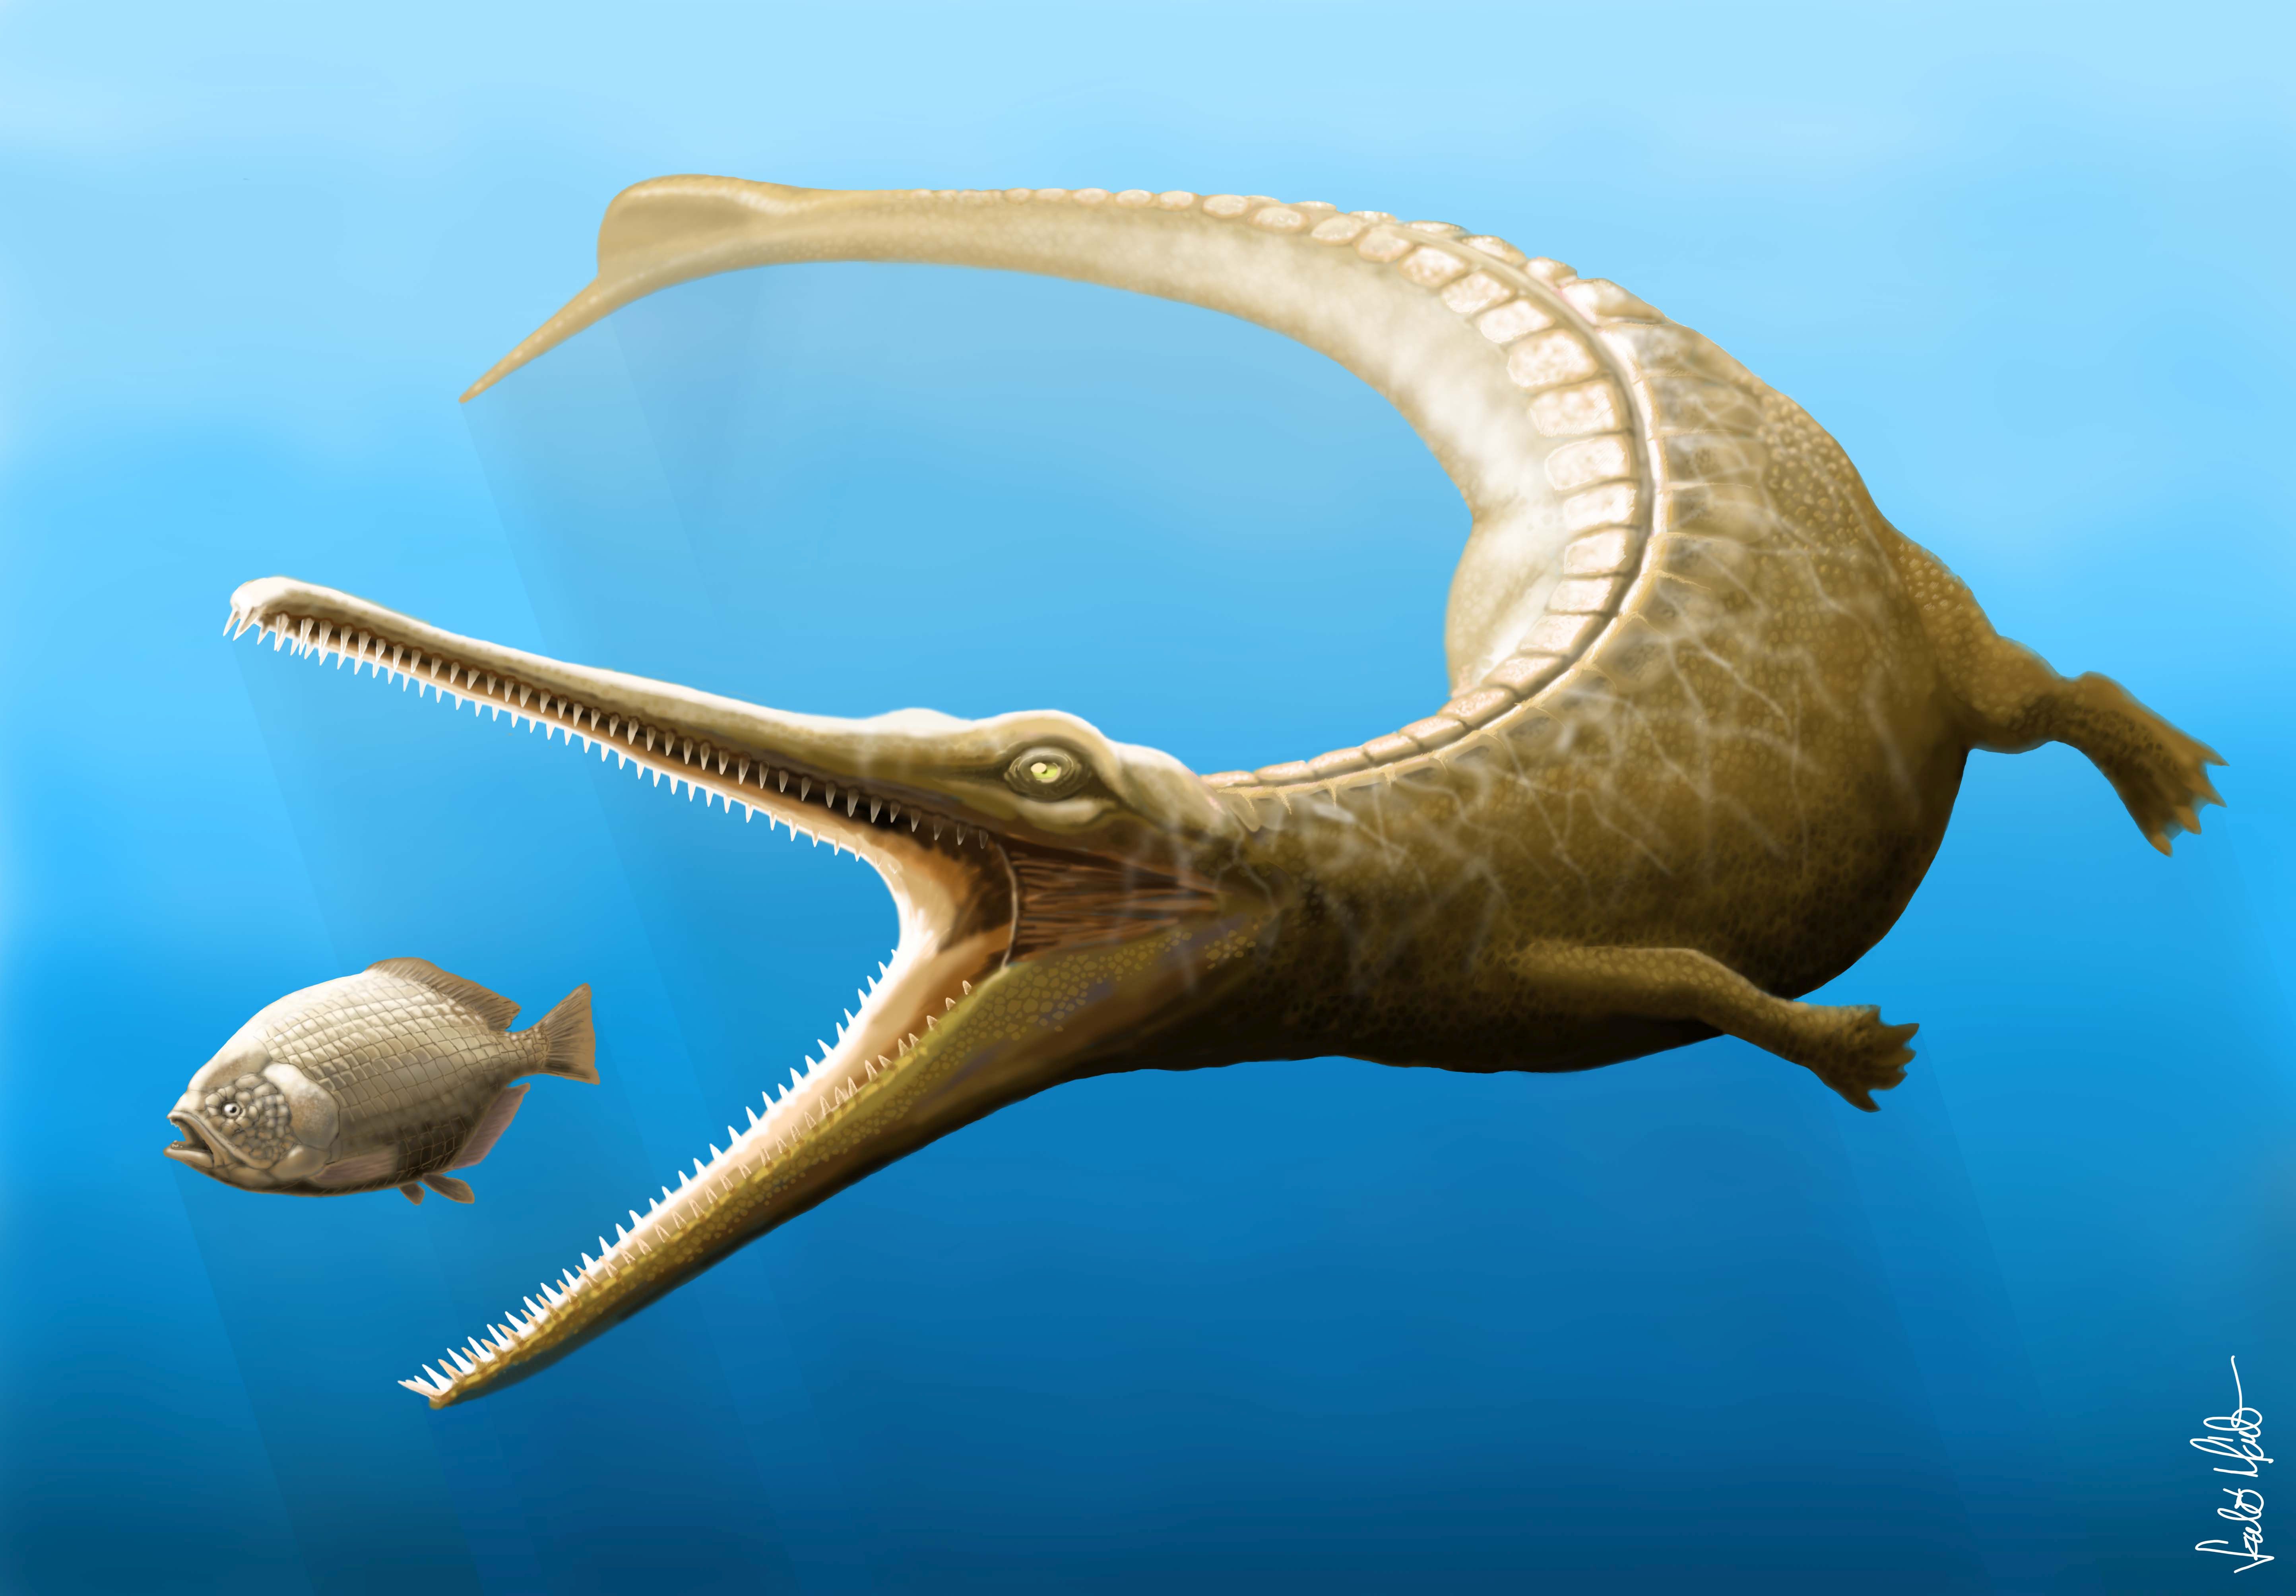 Magyarosuchus fitosinak nevezték el a Gerecsében talált 180 millió éves őskrokodilt